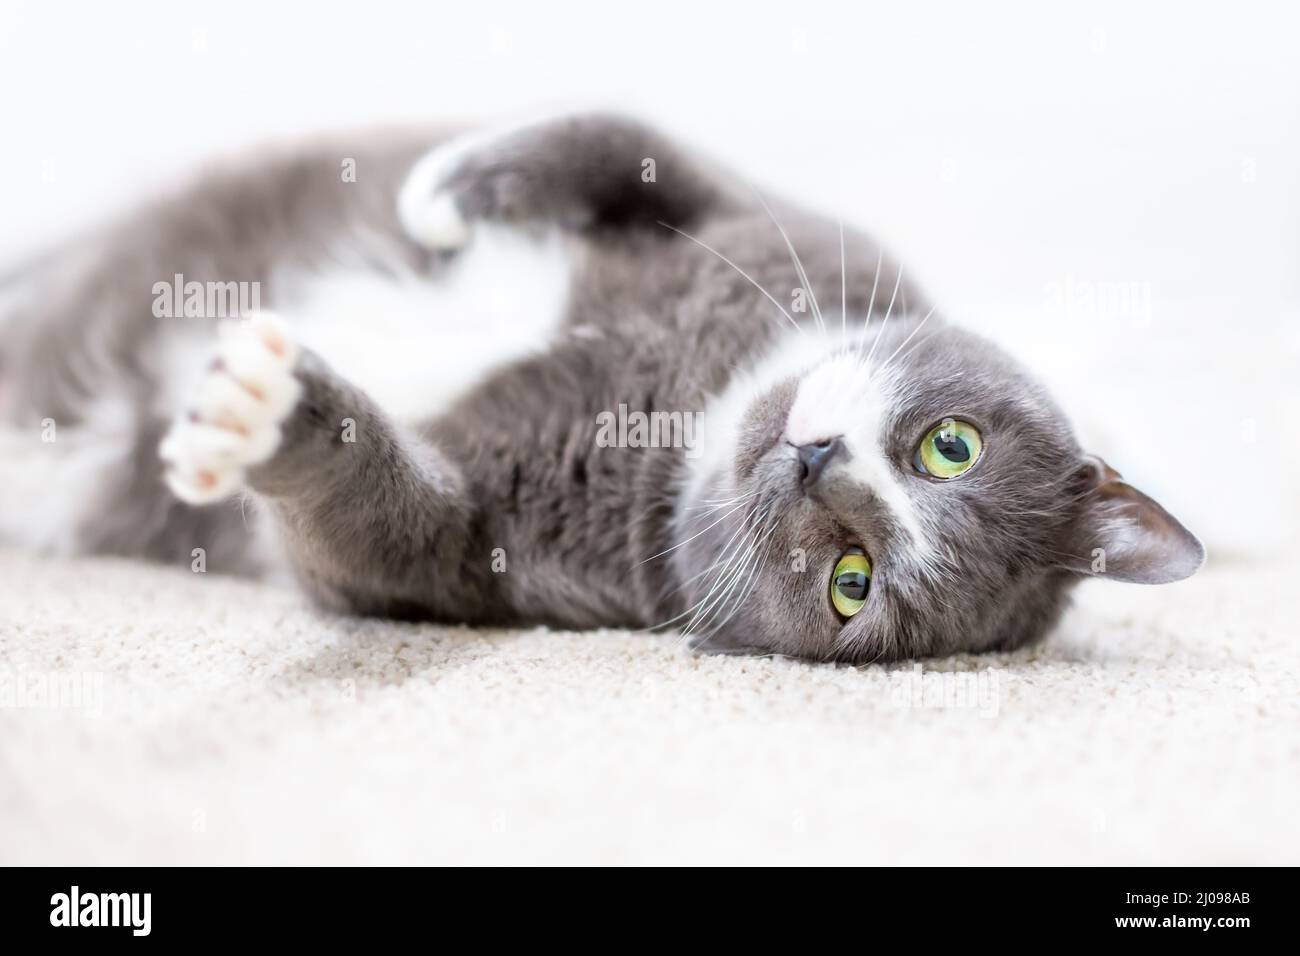 Un gato shorthair gris y blanco con ojos verdes tumbados en una posición relajada boca abajo Foto de stock